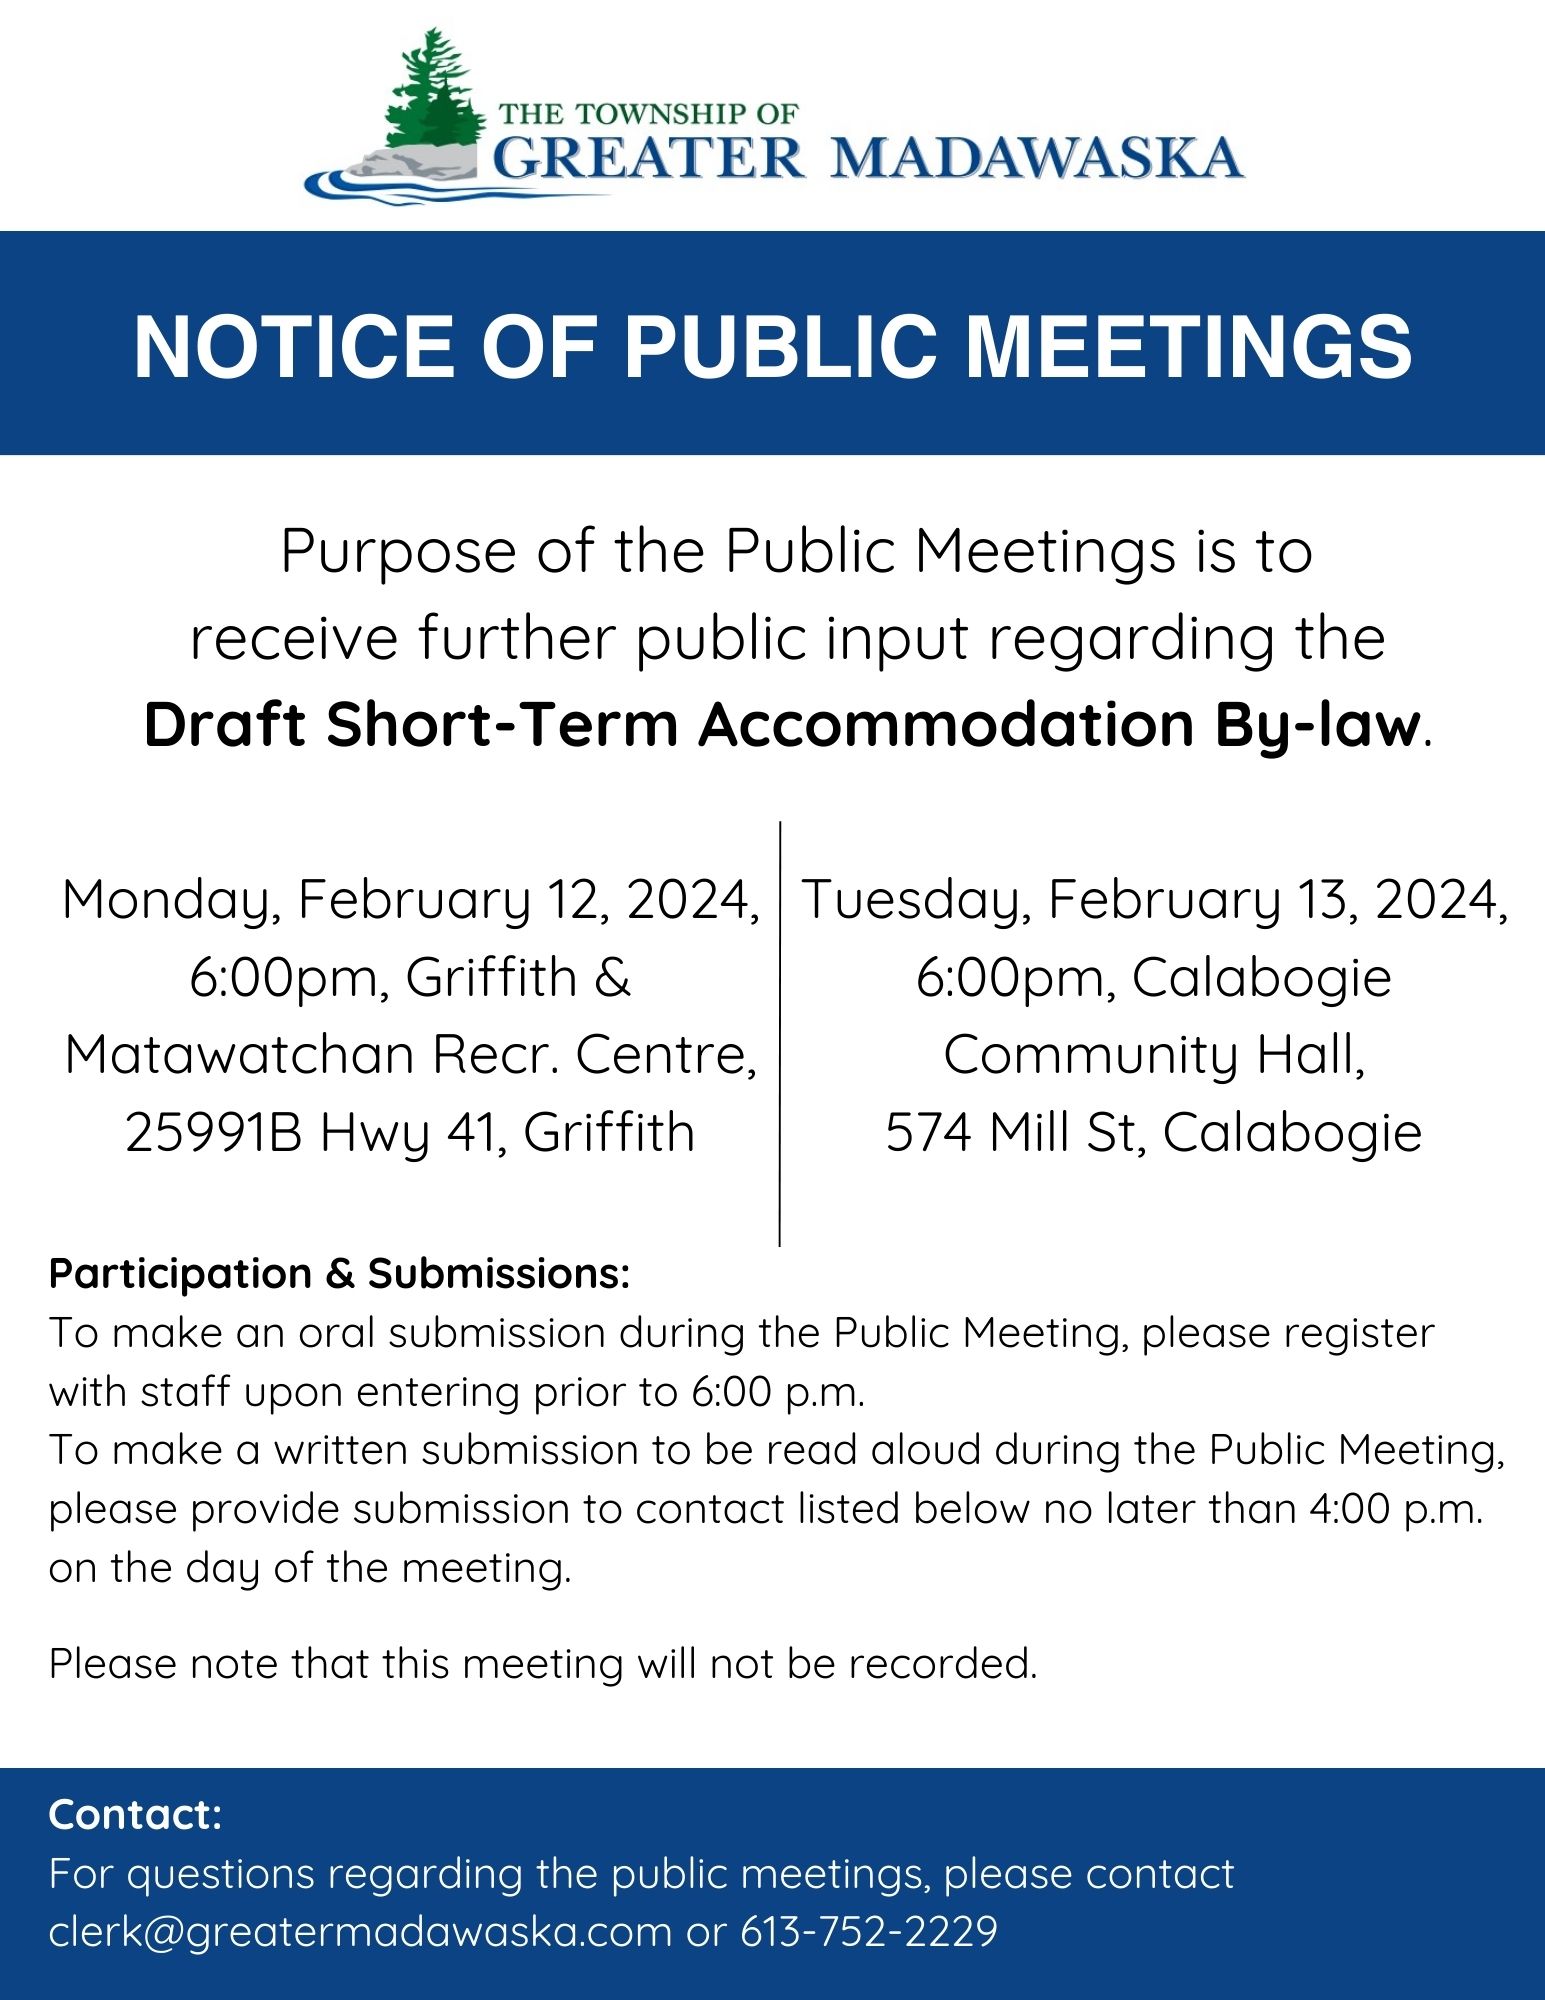 notice of public meeting